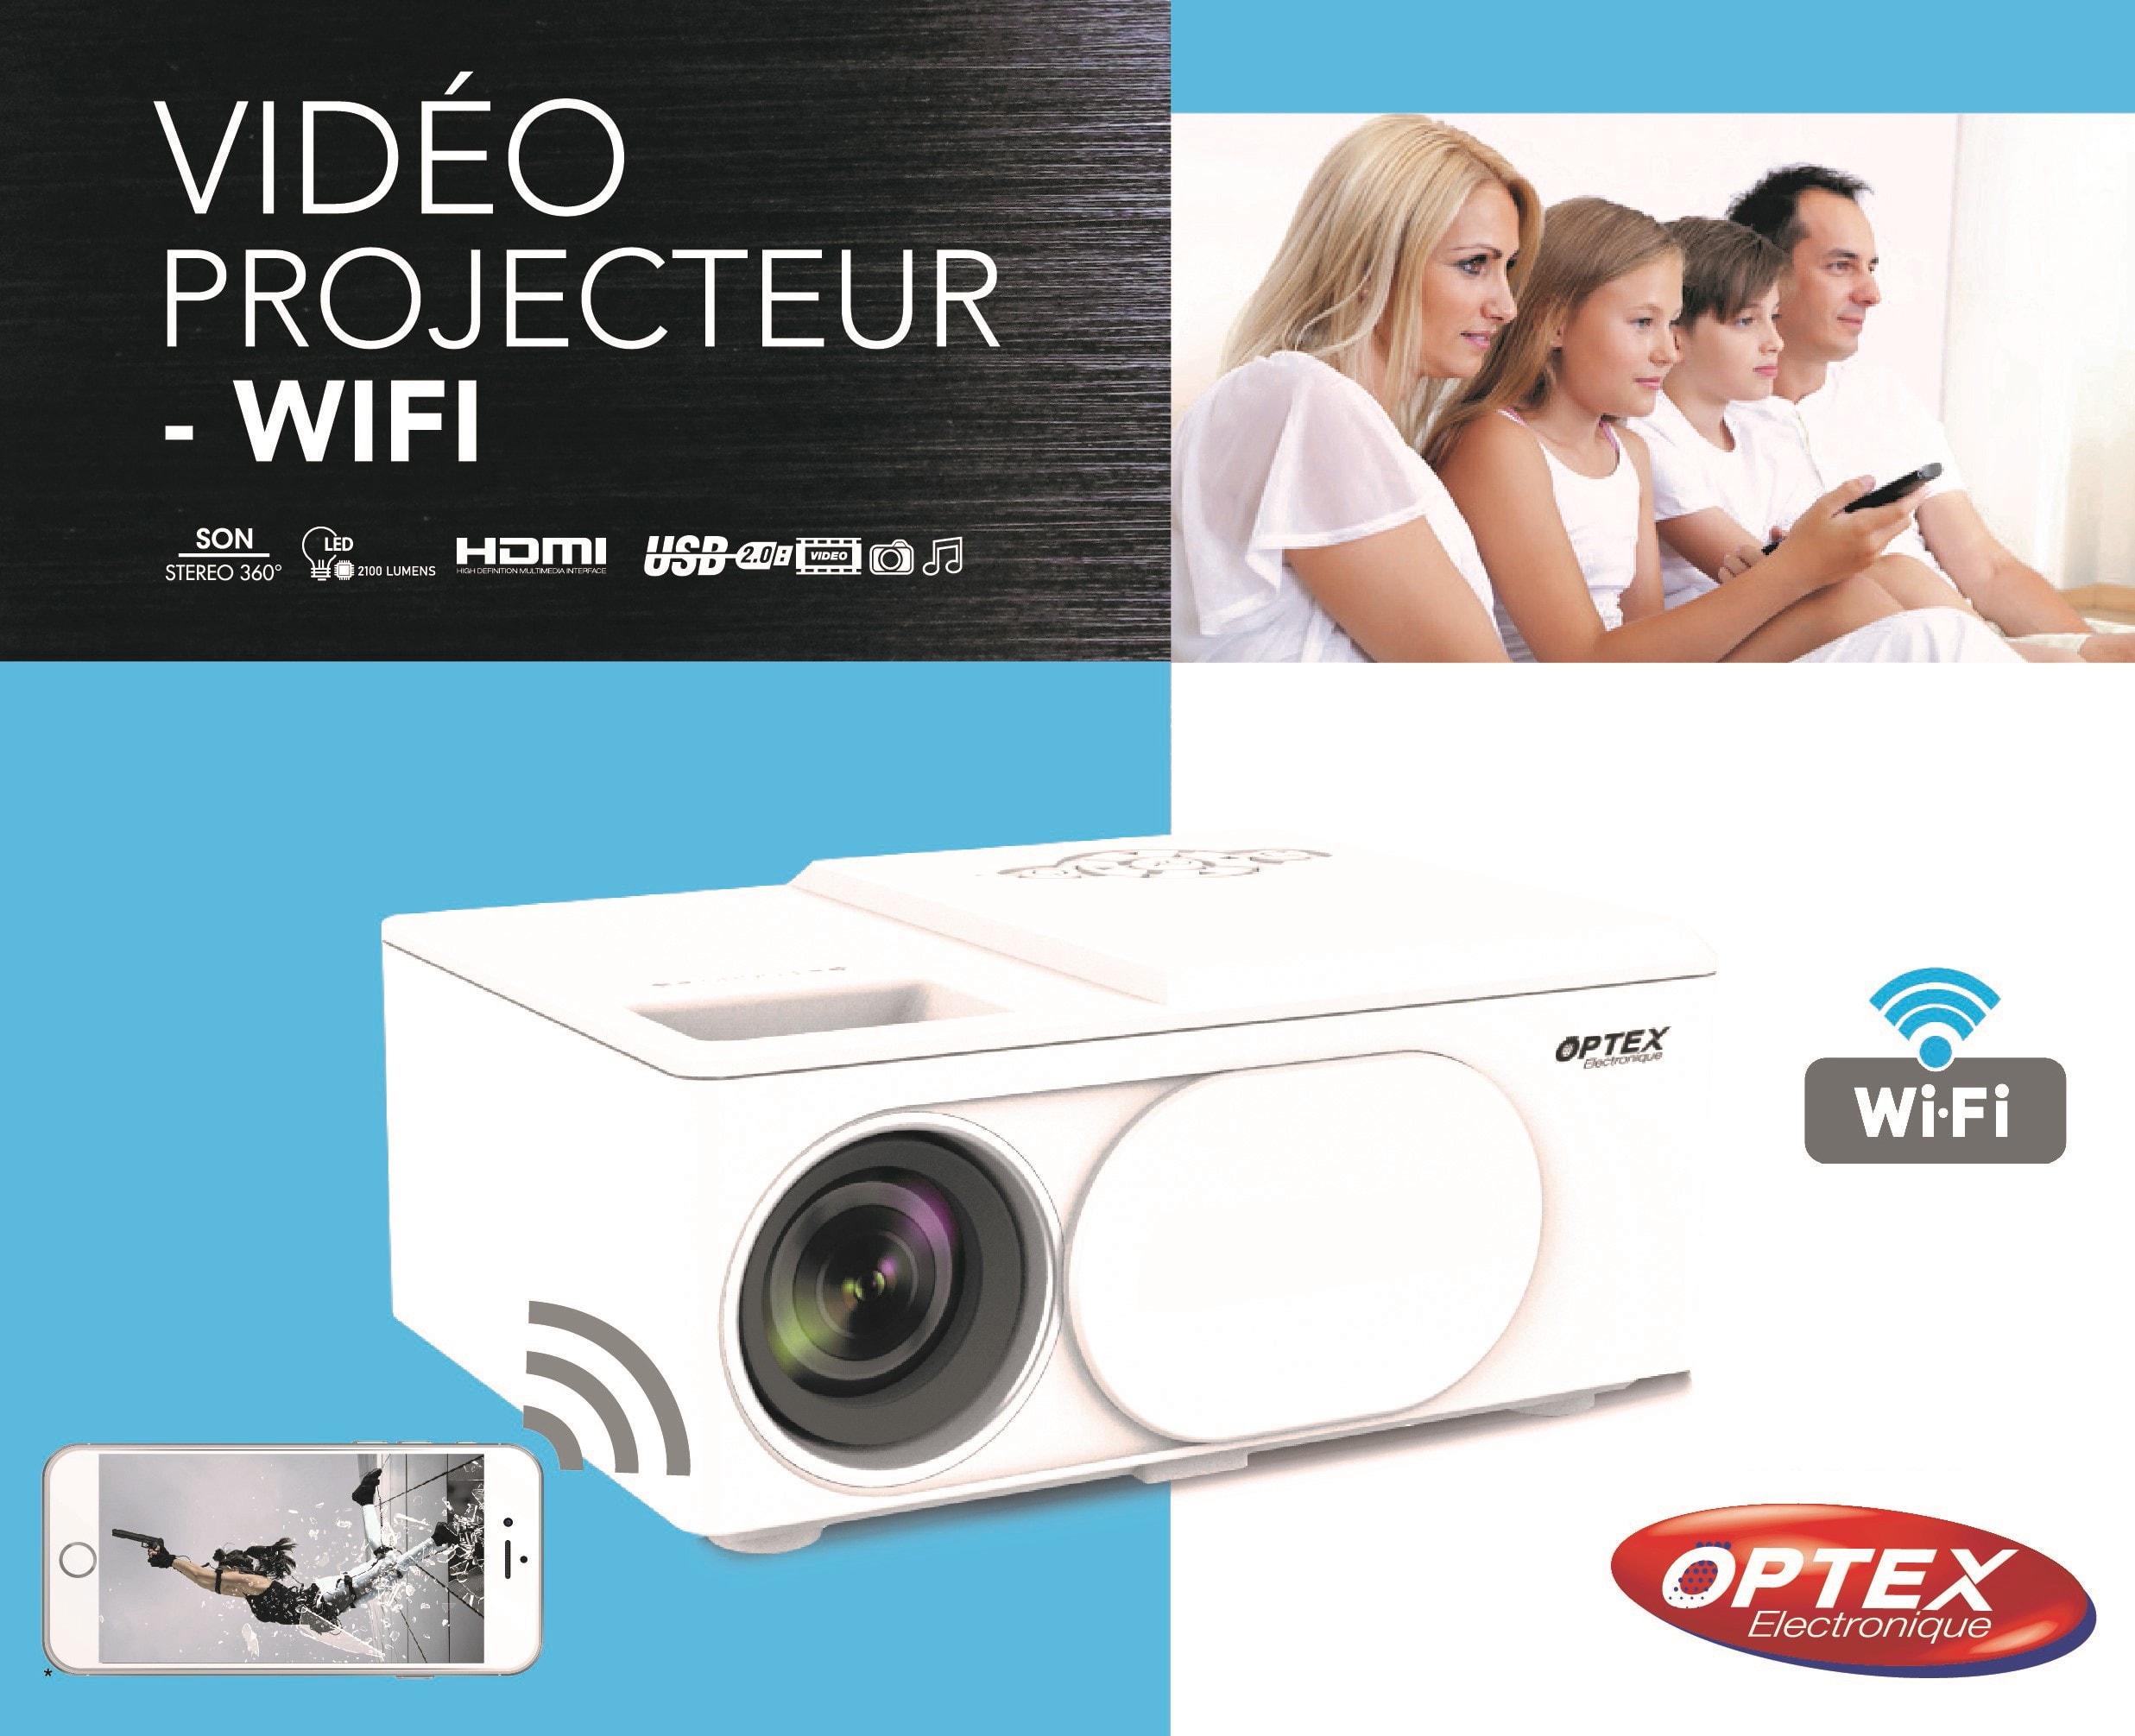 OPTEX  Vidéo projecteur hd wifi portable compact à led optex -  vidéoprojecteur 1080p, son stéréo 360°, distance de projection 0.6 à 5 m,  support multimédia - Livraison Gratuite